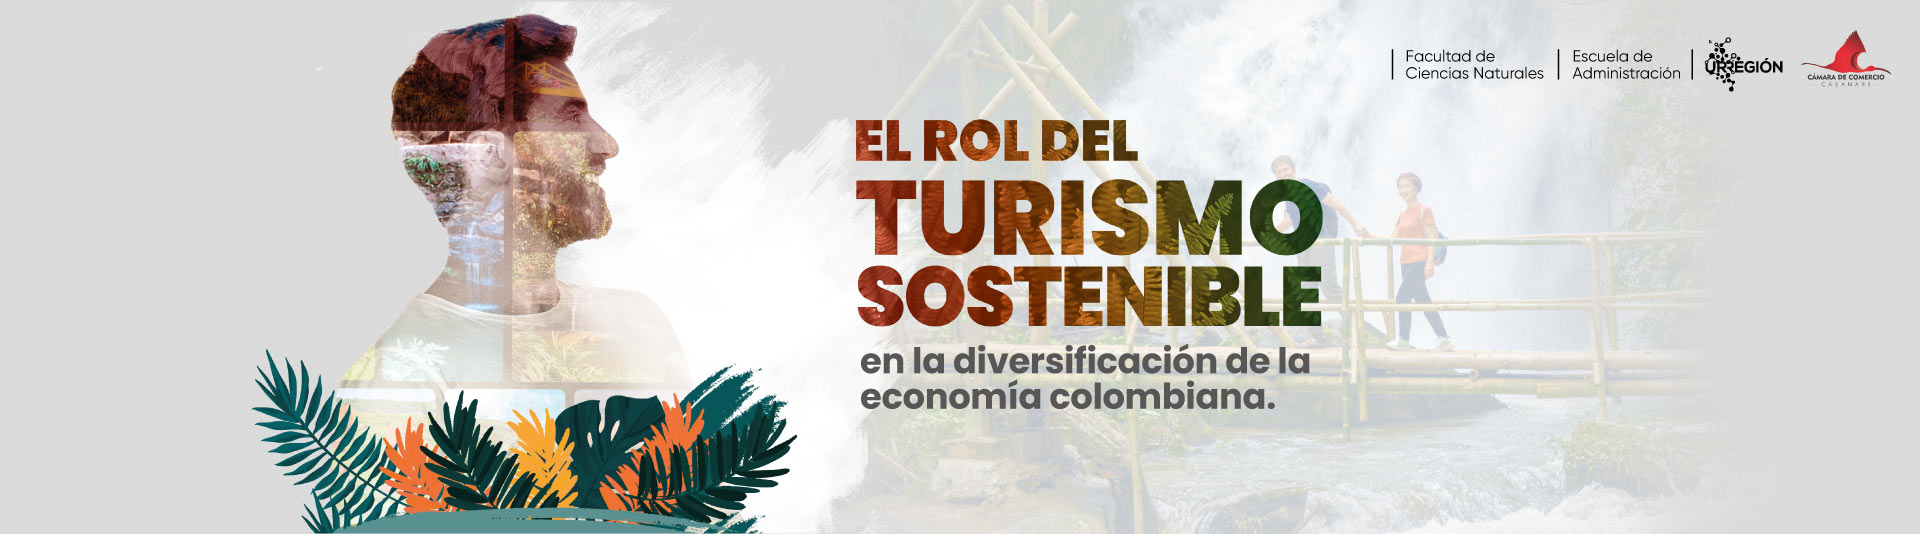 Lanzamiento Turismo sostenible Yopal